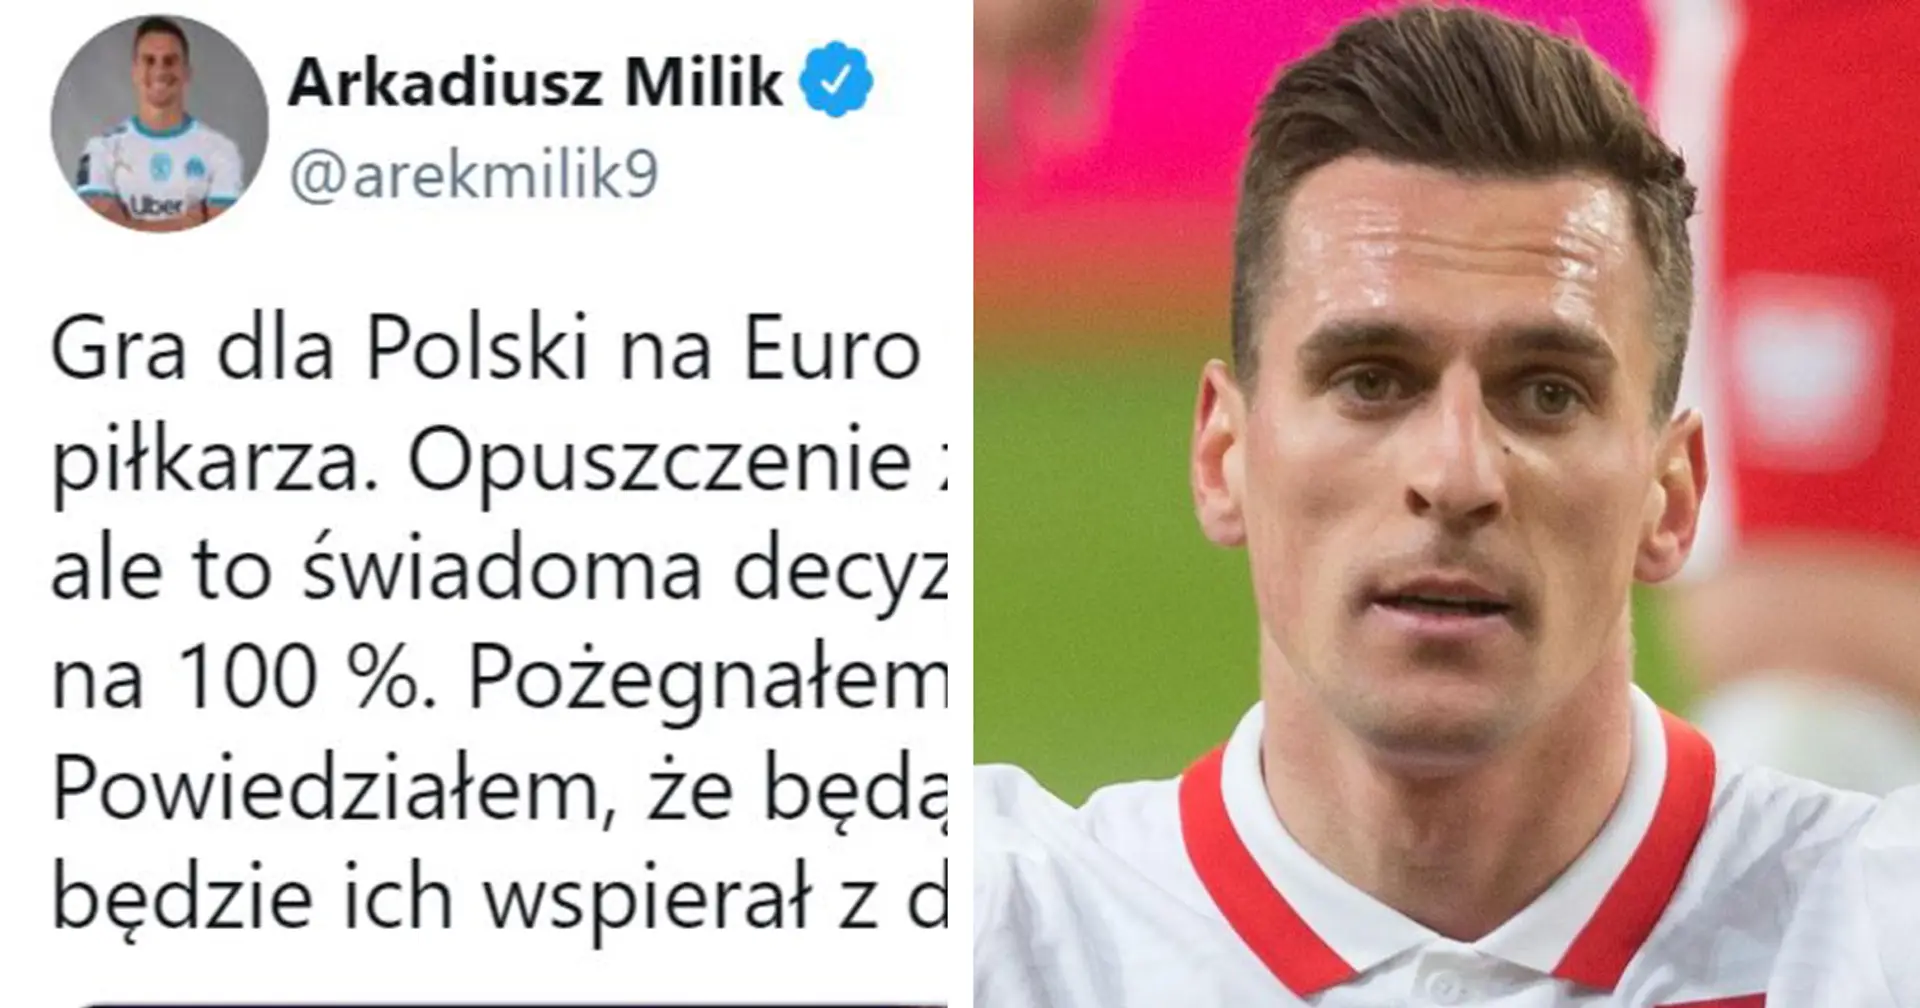 "C’est difficile pour moi de quitter le groupe, mais c’est une décision consciente": la première réaction de Milik à son forfait pour l'Euro